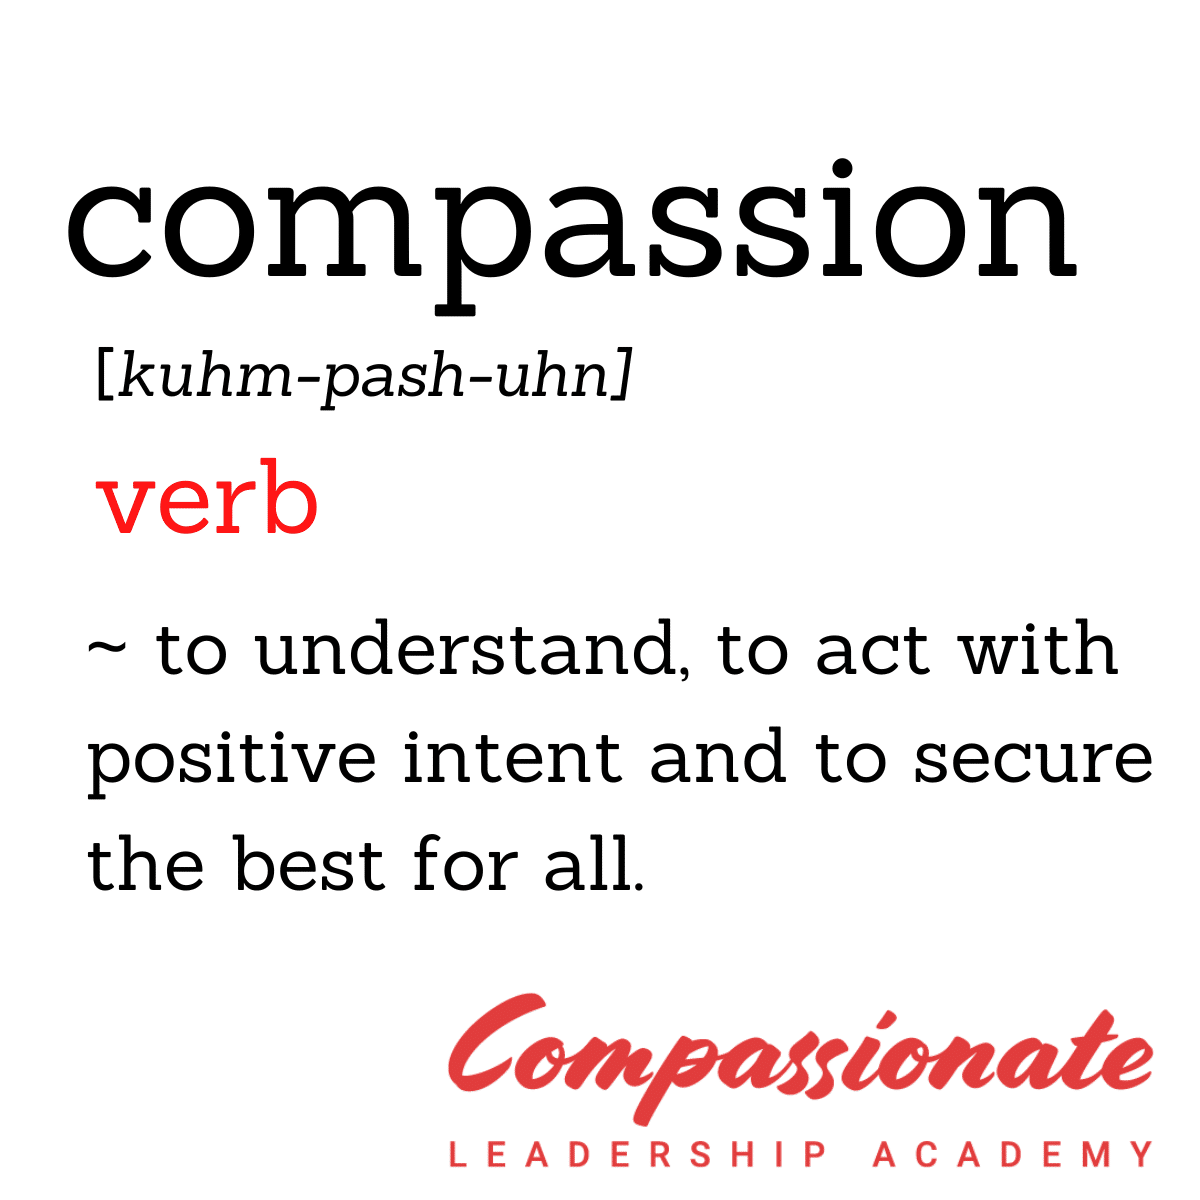 compassion essay in english